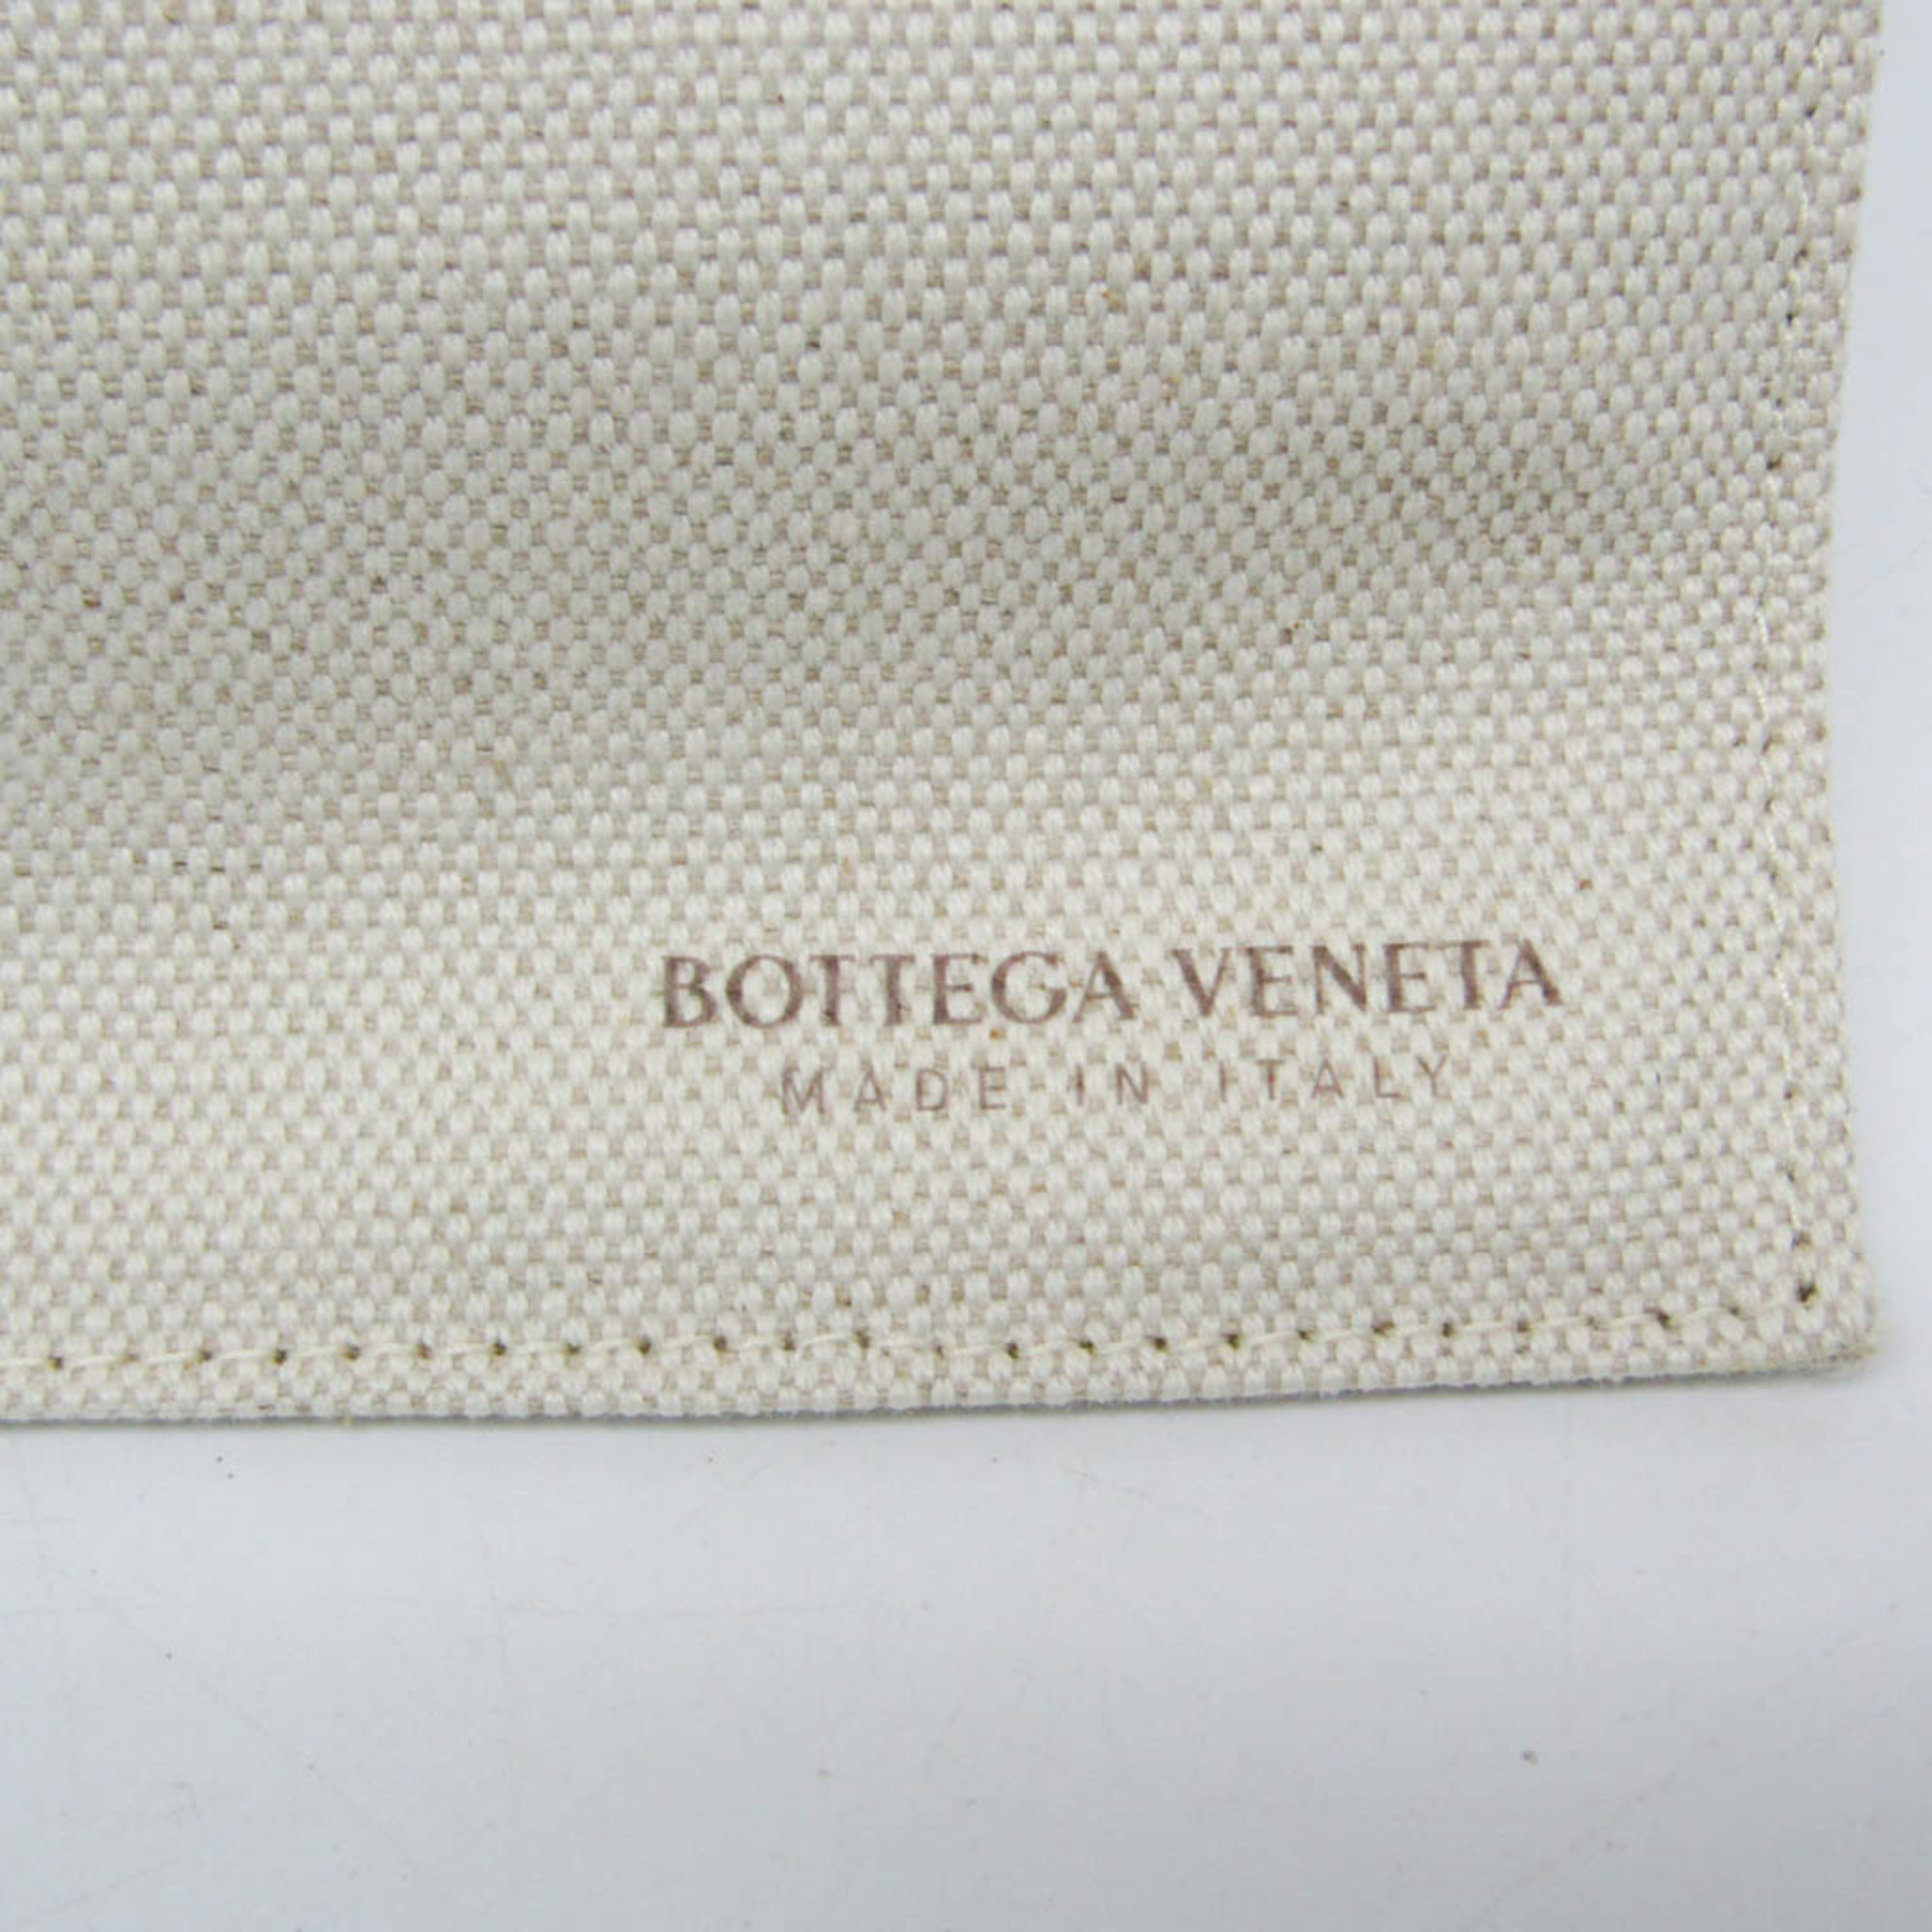 ボッテガ・ヴェネタ(Bottega Veneta) アルコ ミディアム 614486 レディース キャンバス,レザー トートバッグ ブラック,オフホワイト